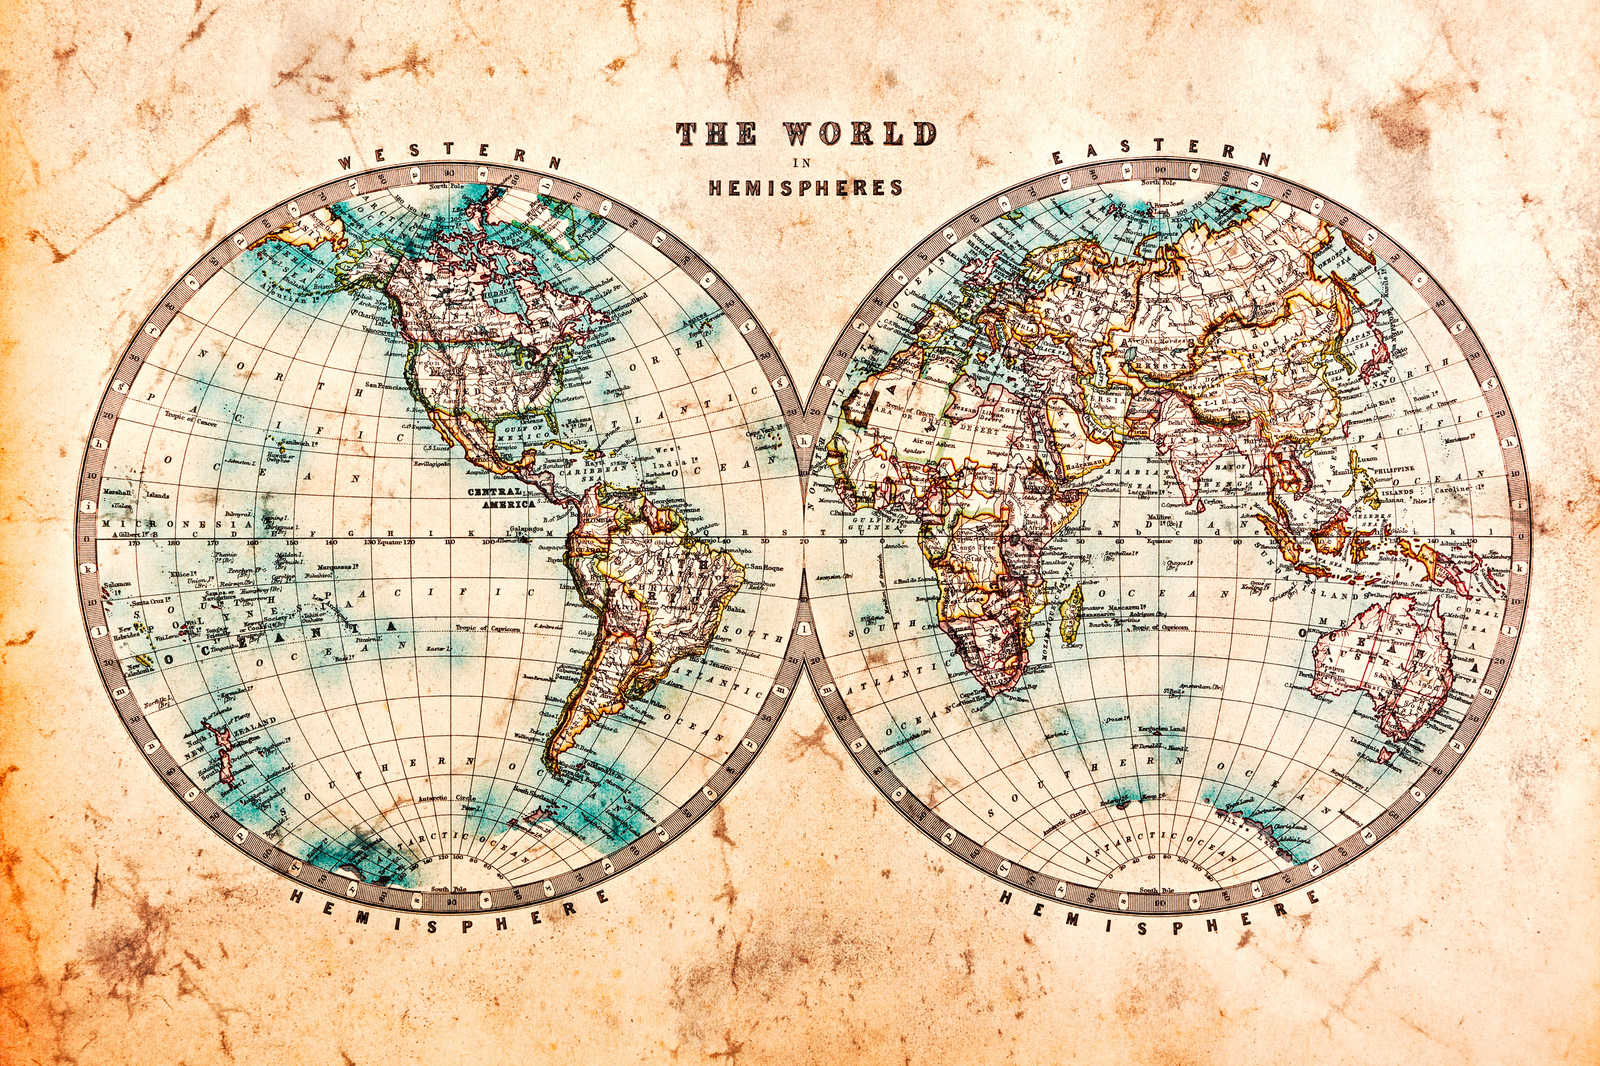             Leinwand mit Vintage Weltkarte in Hemisphären | braun, beige, blau – 0,90 m x 0,60 m
        